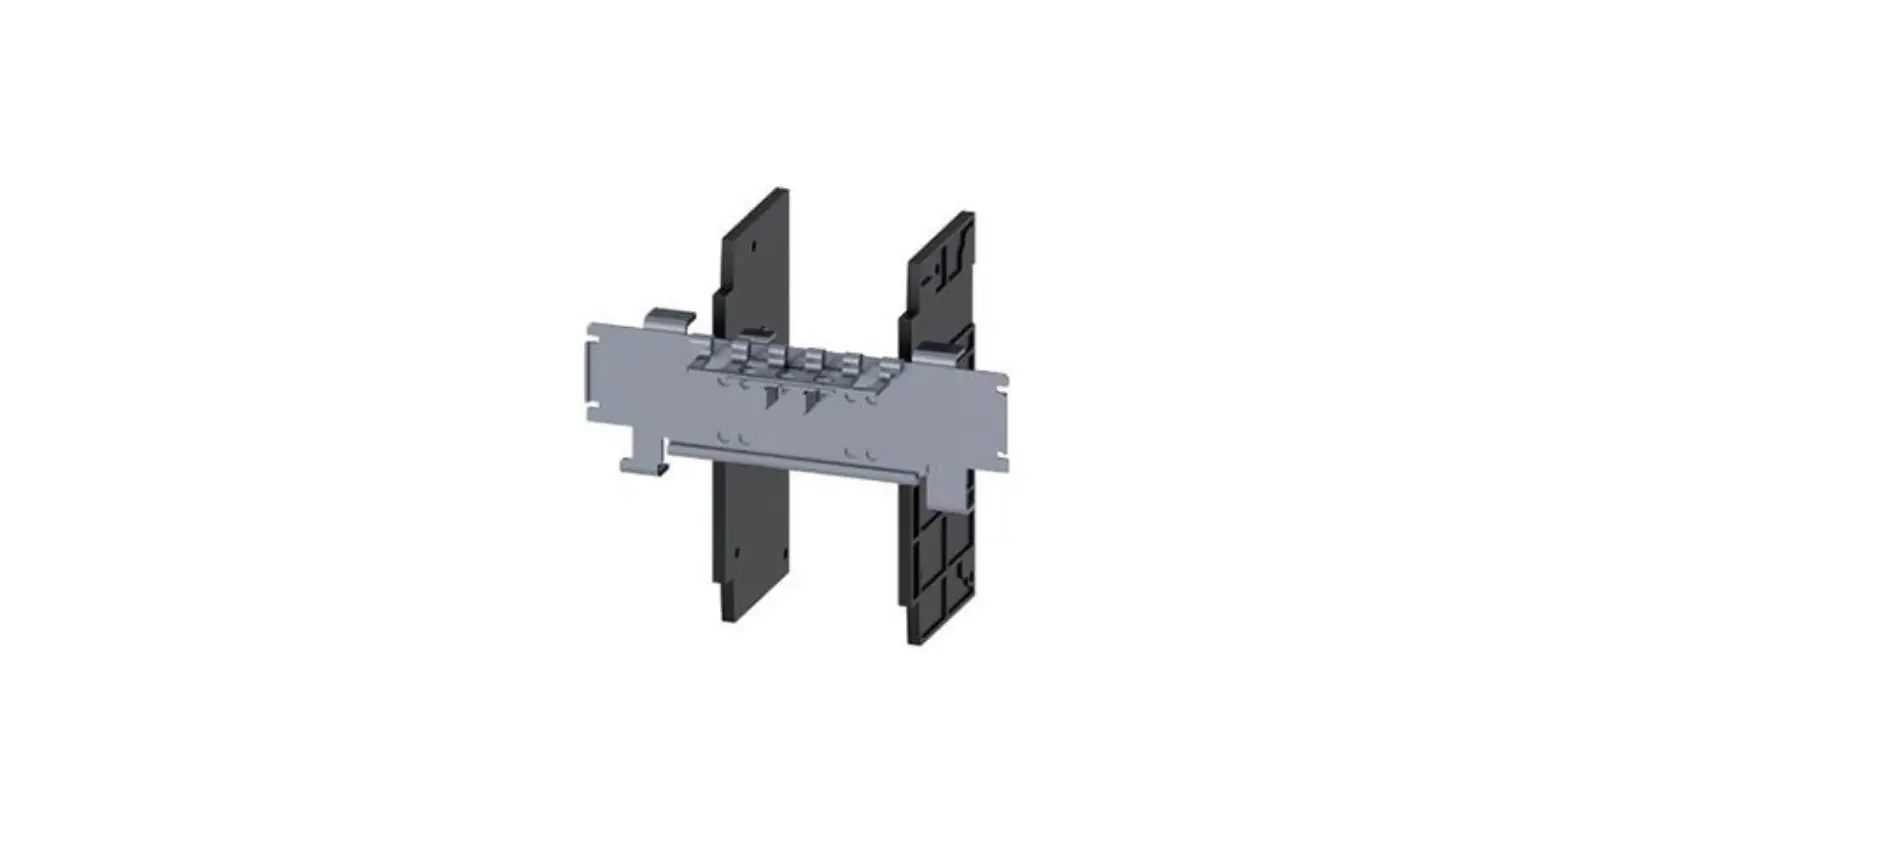 3VA9158-0VF30 Front Sliding Bar Interlock